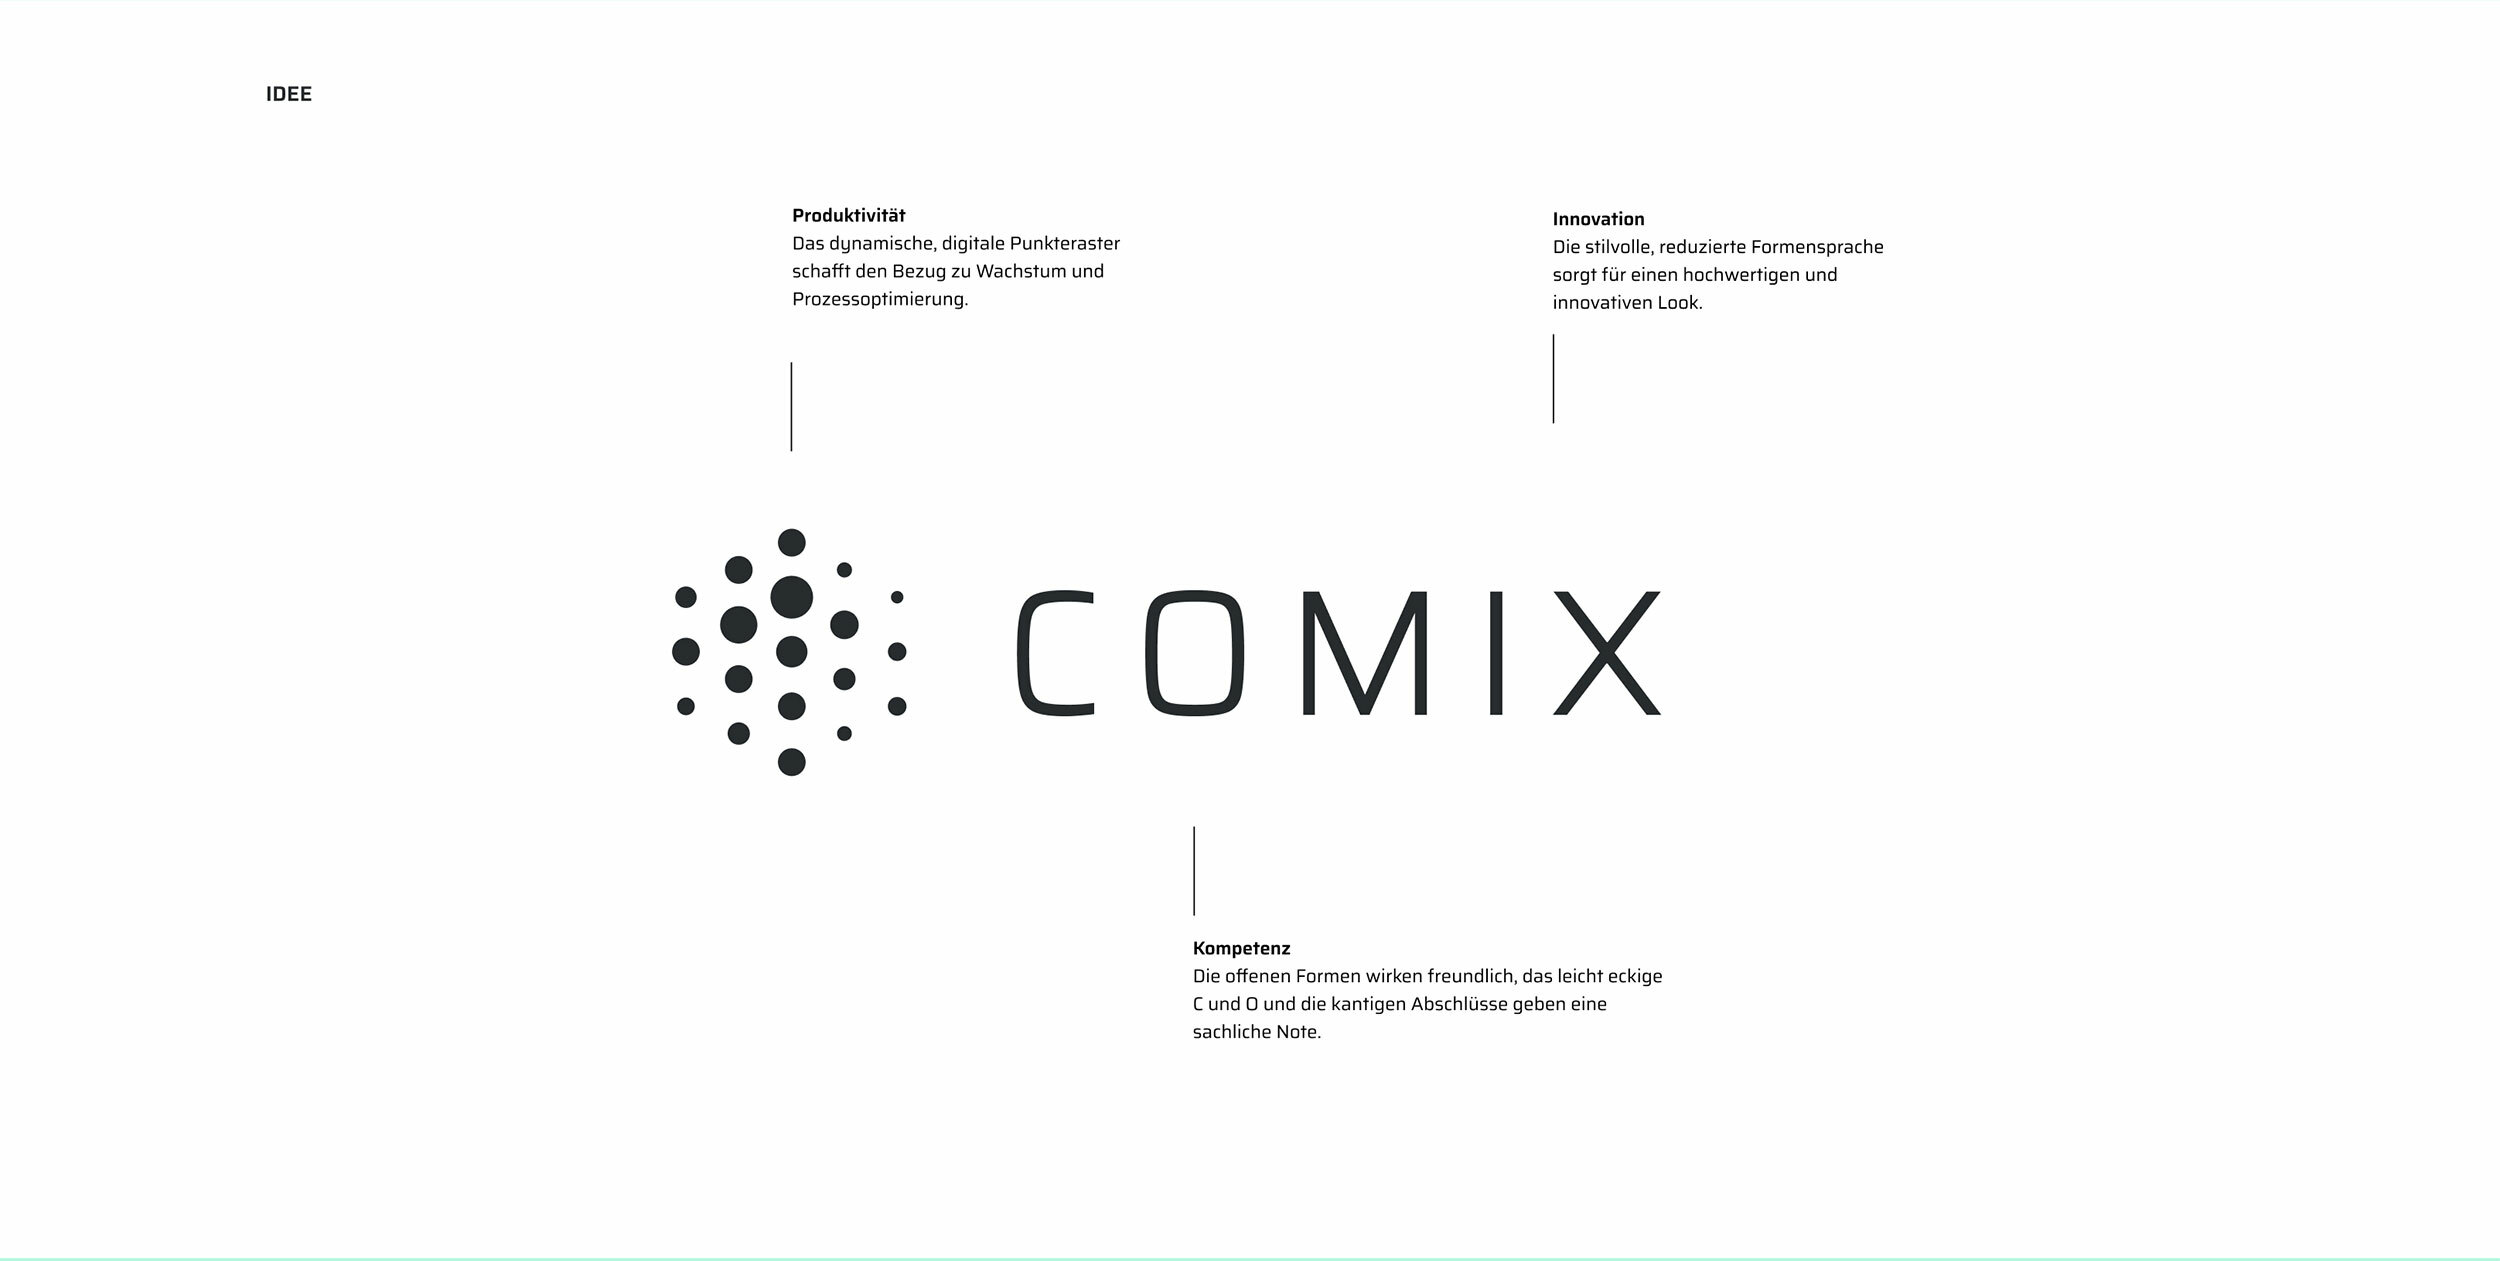 Comix Logo mit Ableitungen der 3 Werte